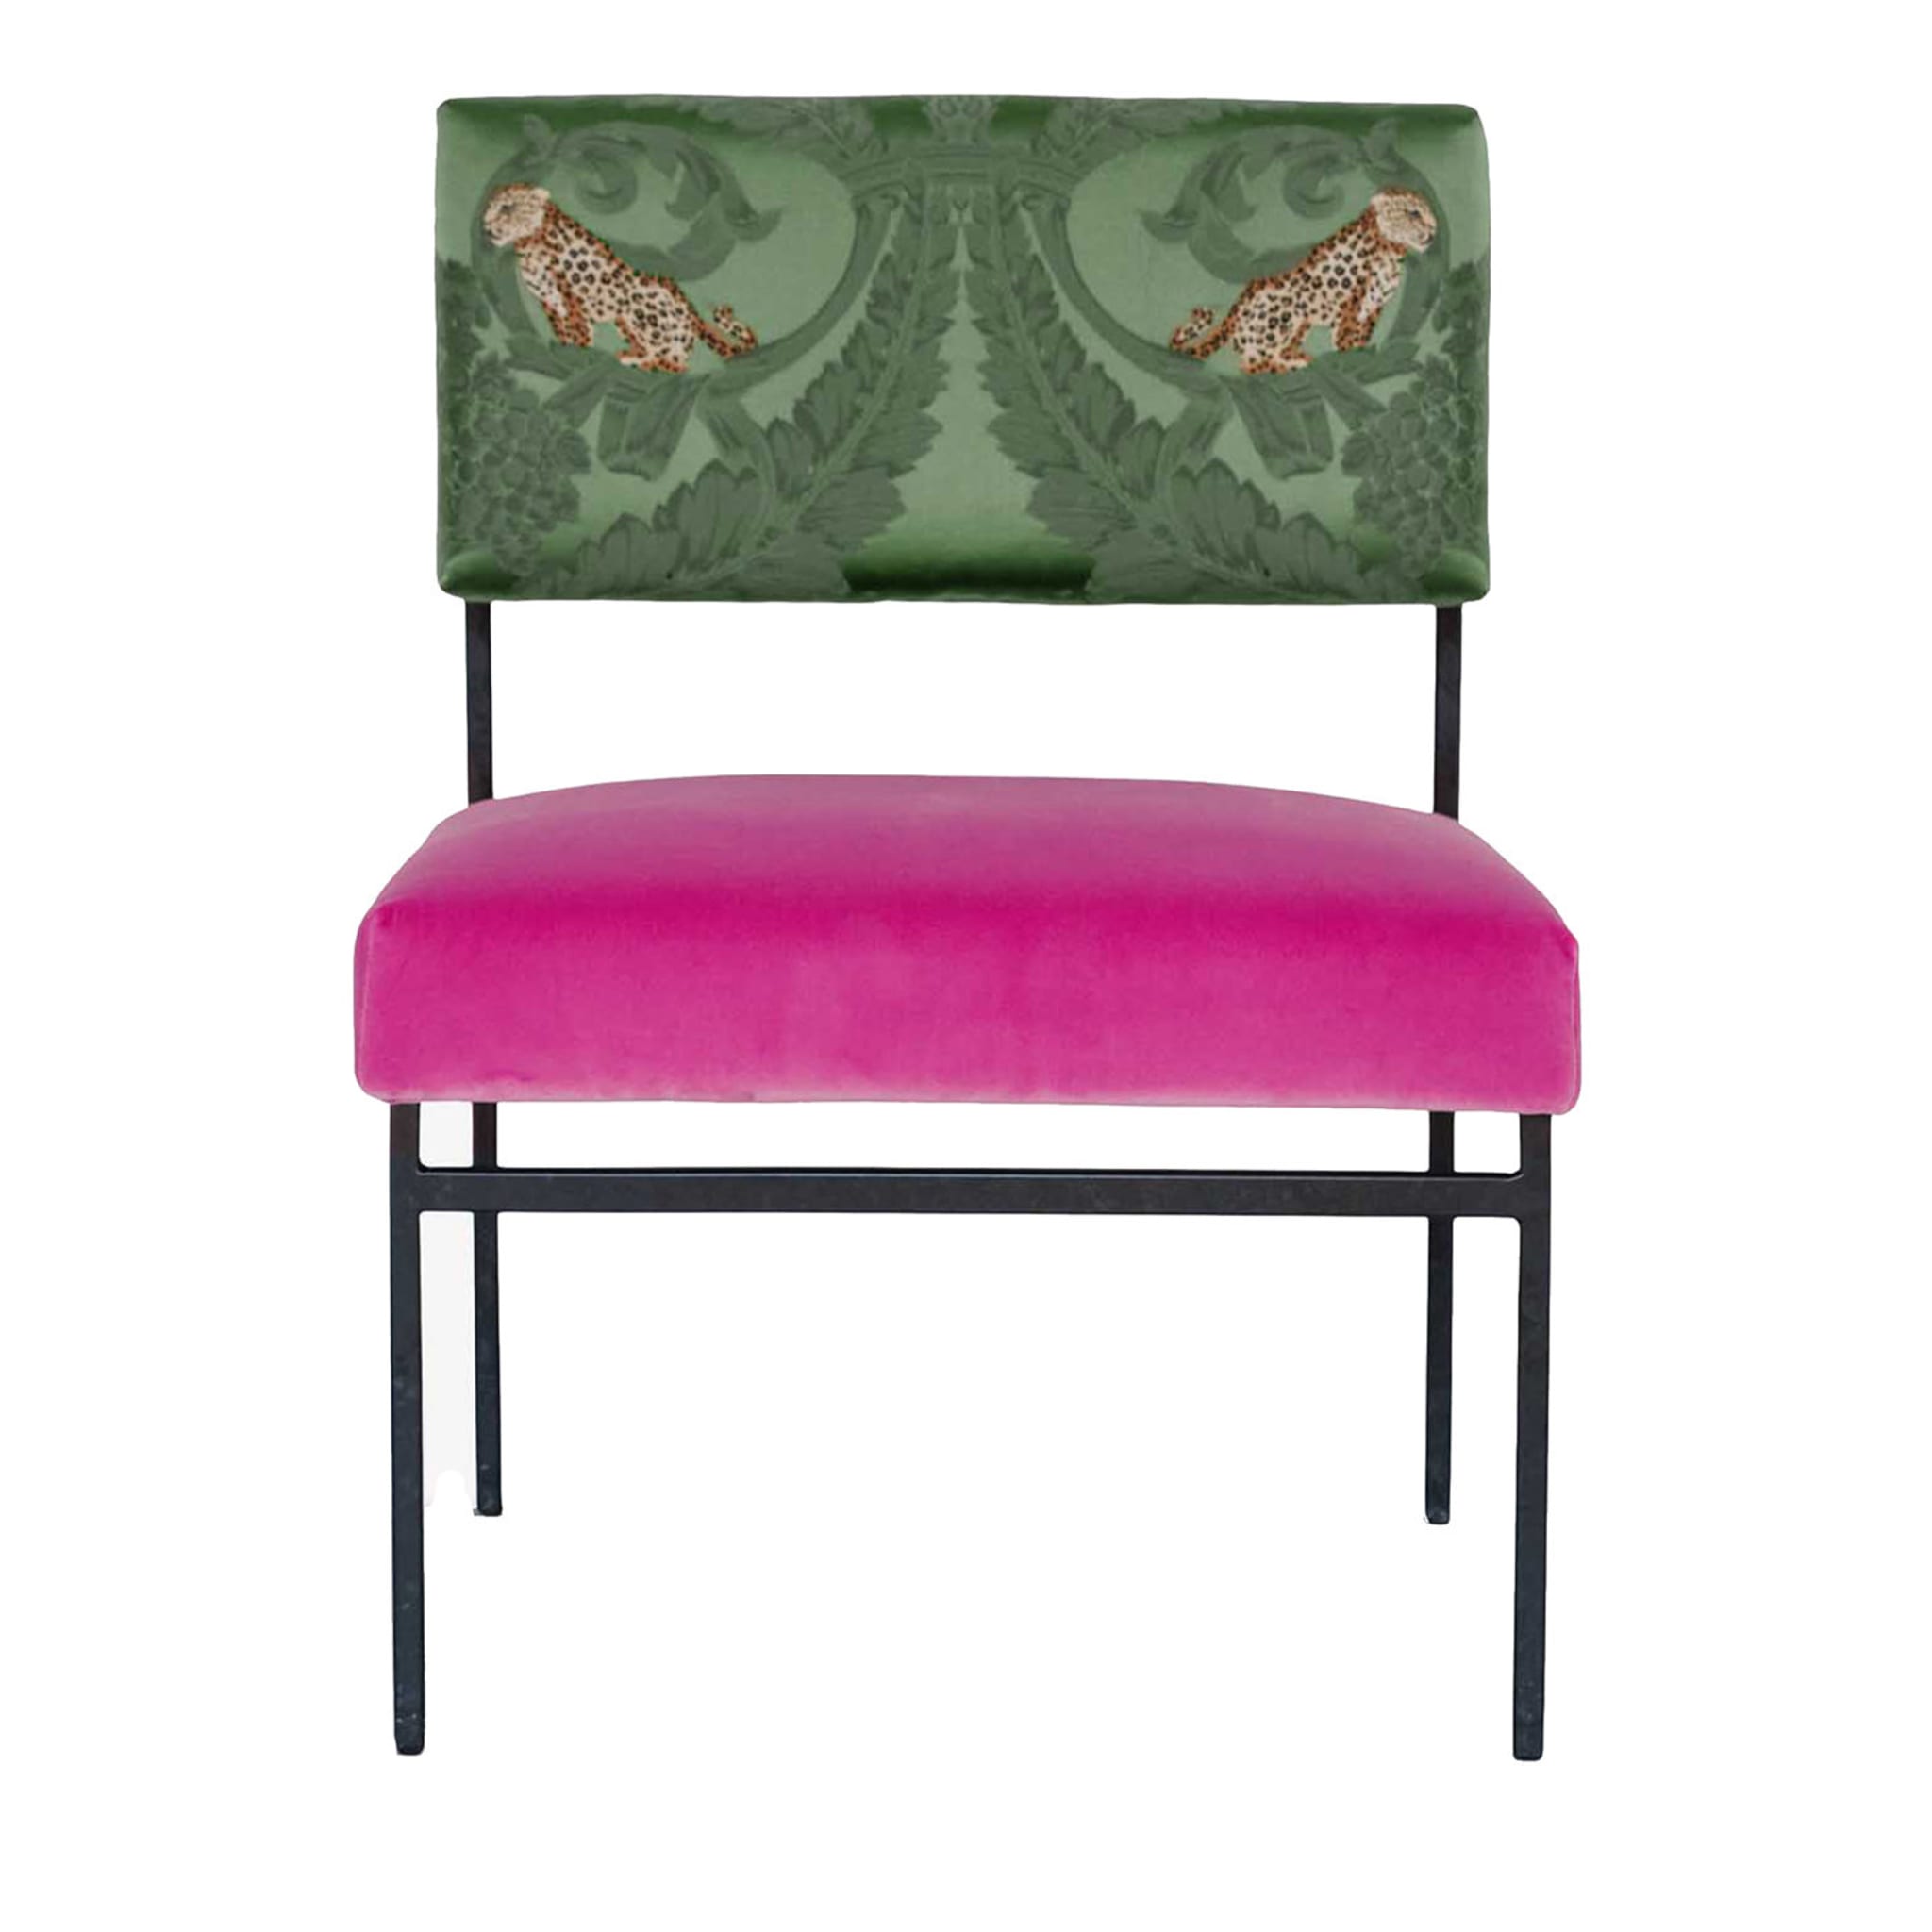 Chaise longue en velours rose et soie verte Aurea - Vue principale